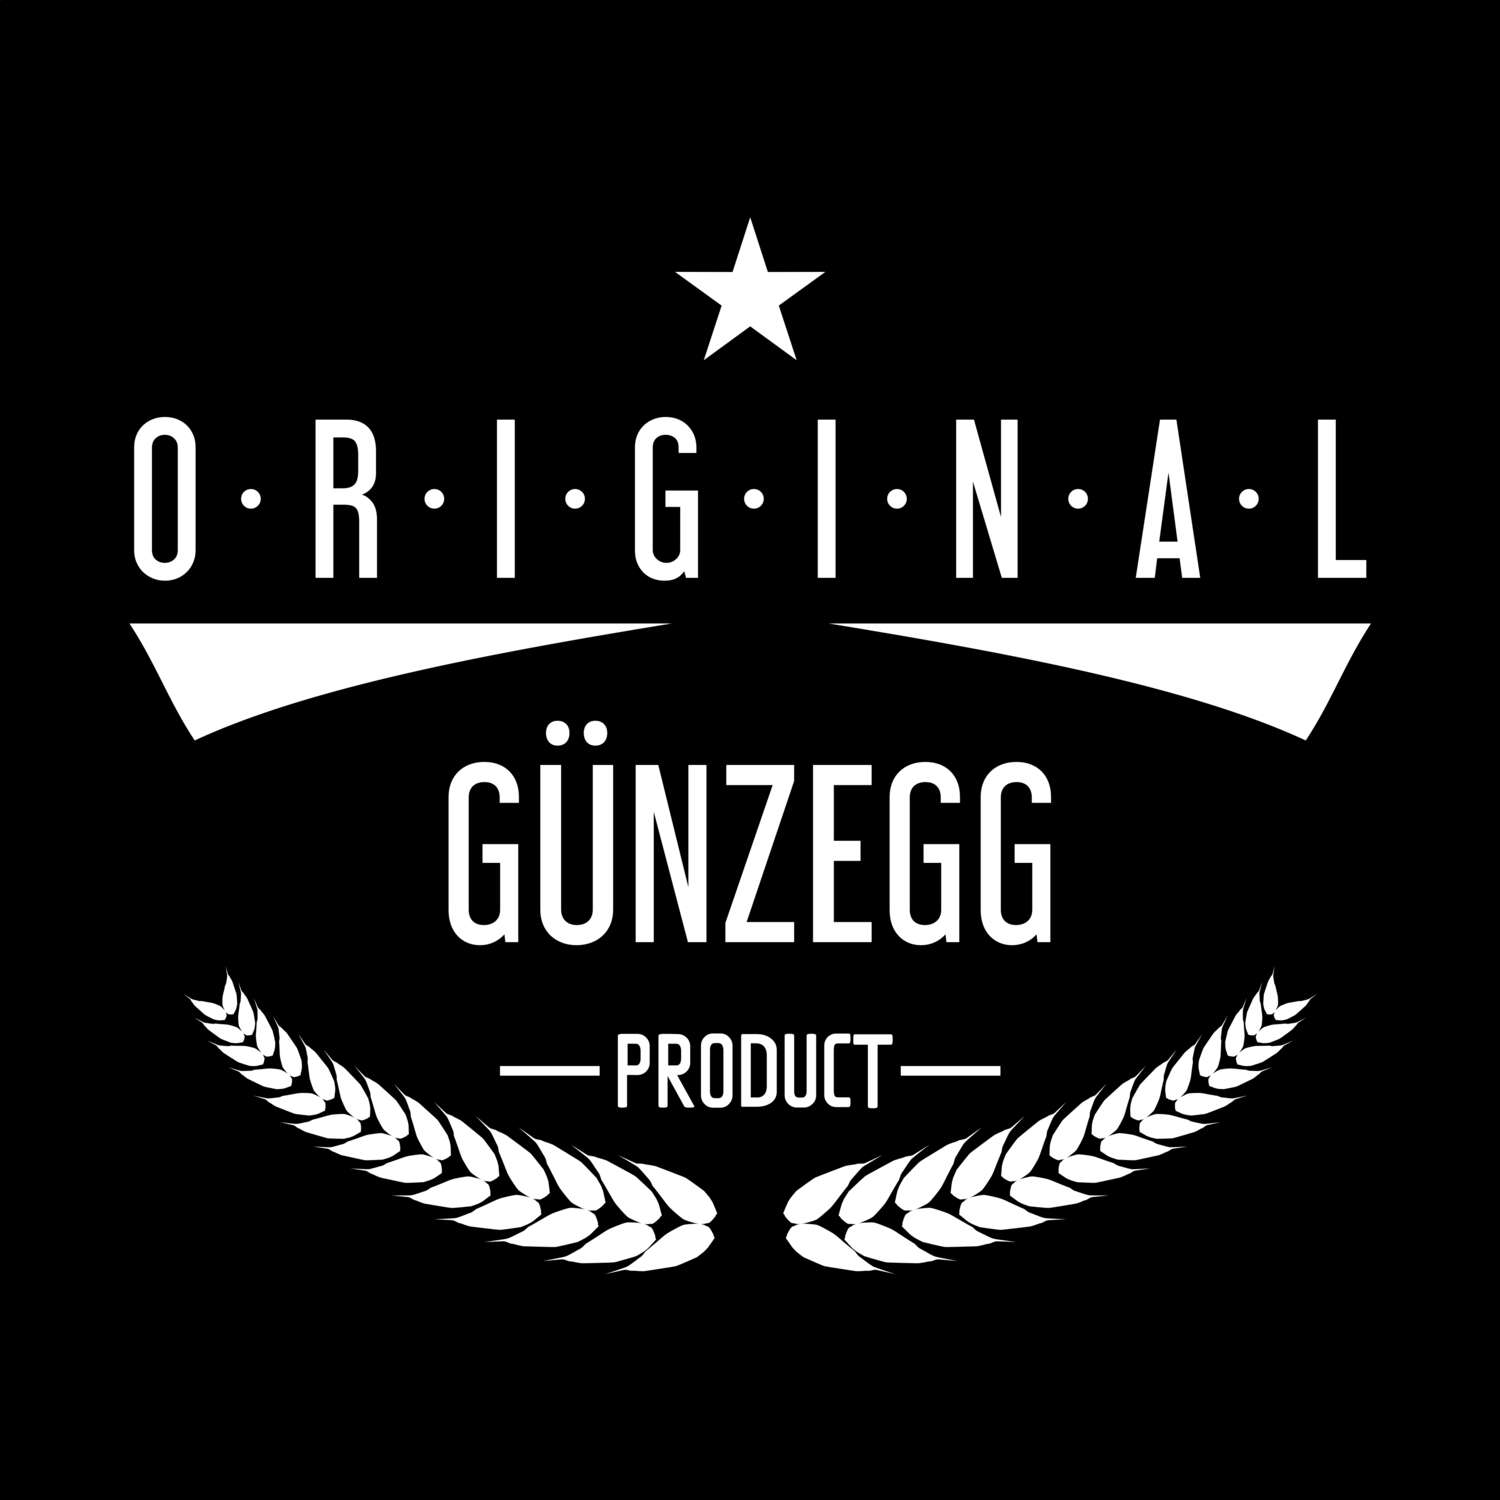 Günzegg T-Shirt »Original Product«